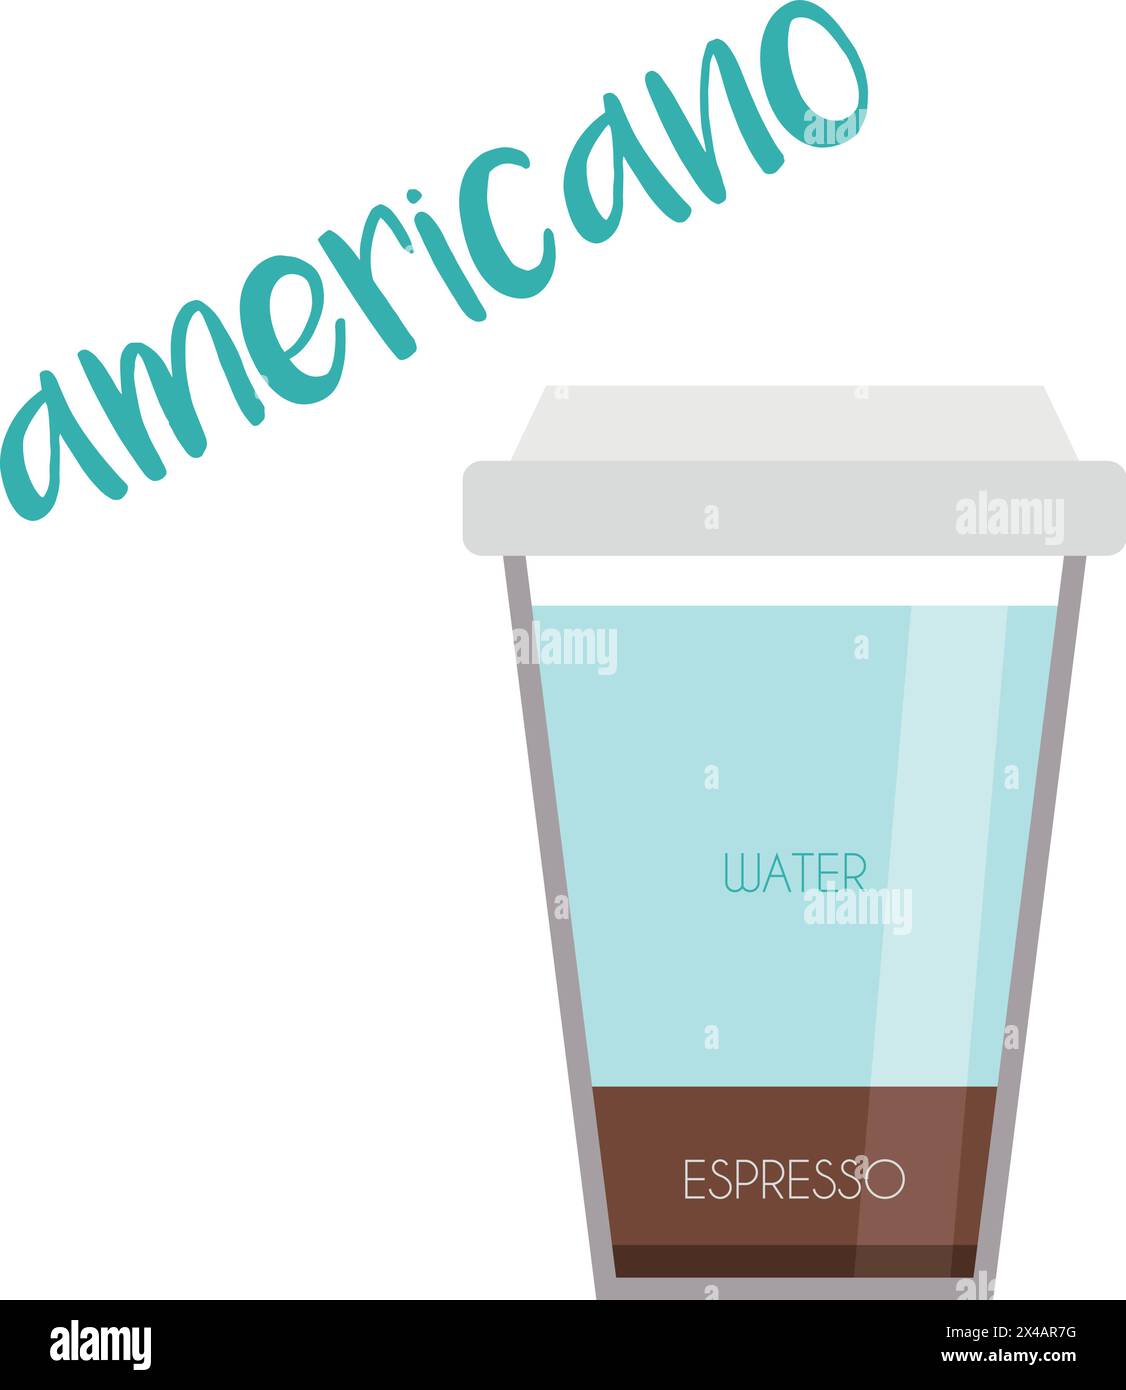 Vektor-Illustration eines Americano Kaffeetassen-Symbols mit seiner Vorbereitung und Proportionen. Stock Vektor